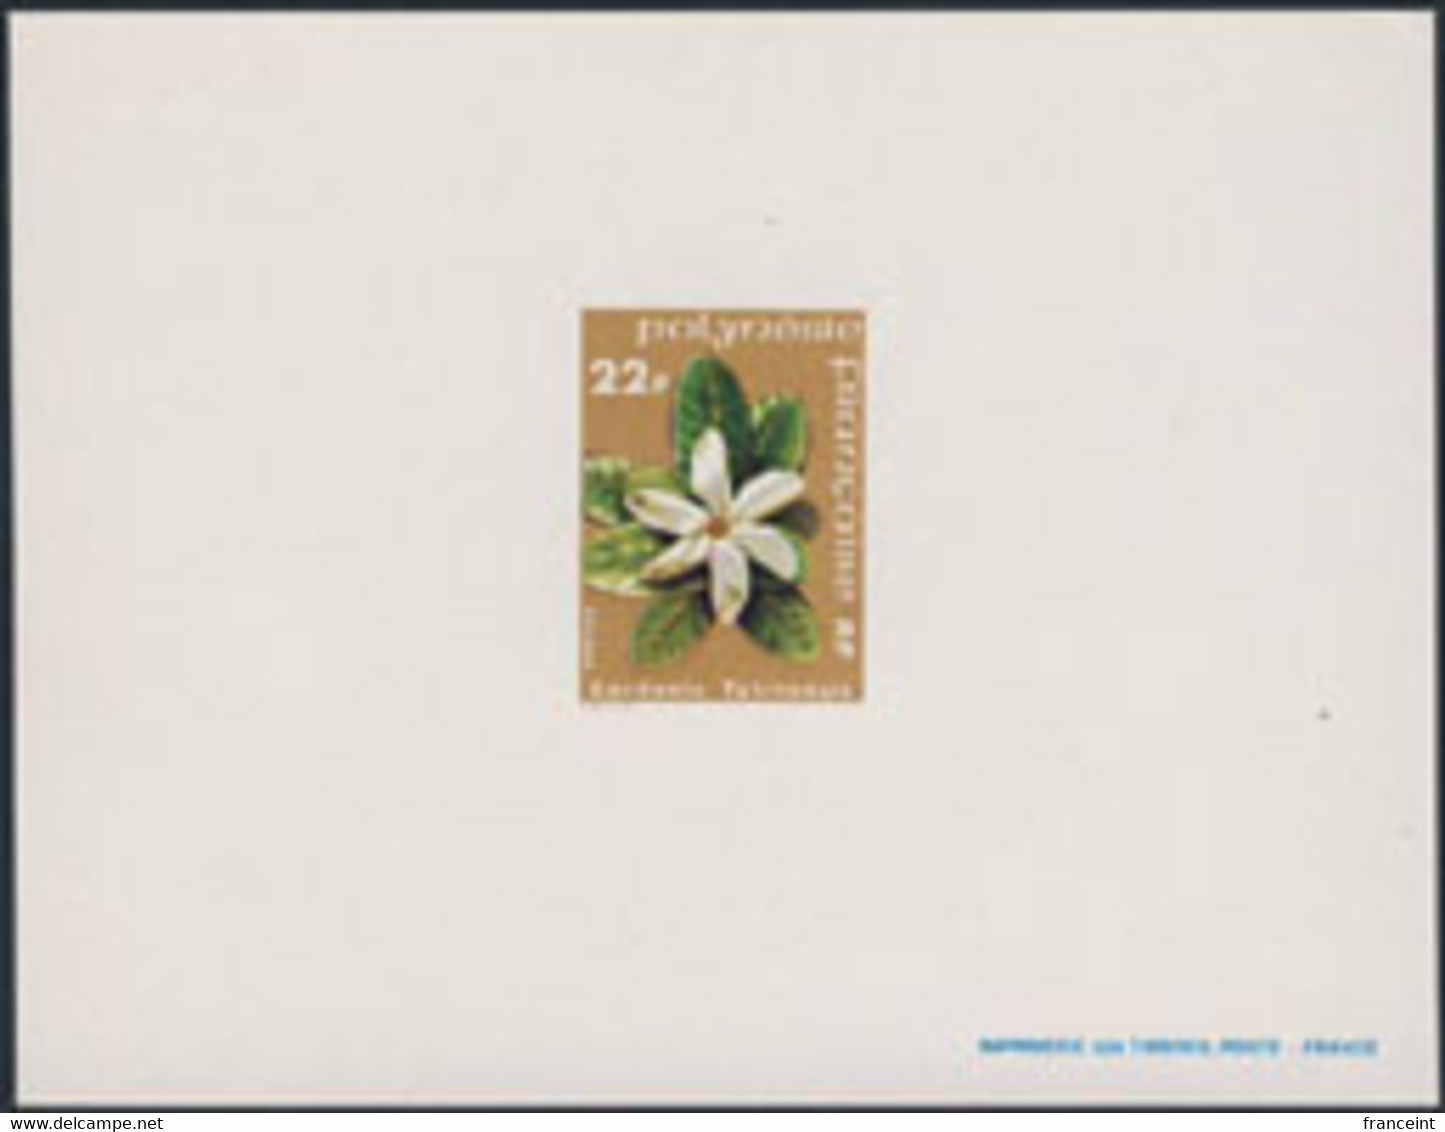 FRENCH POLYNESIA (1979) Tahitian Gardenia. Deluxe Sheet. Scott No 303, Yvert No 129. - Non Dentelés, épreuves & Variétés